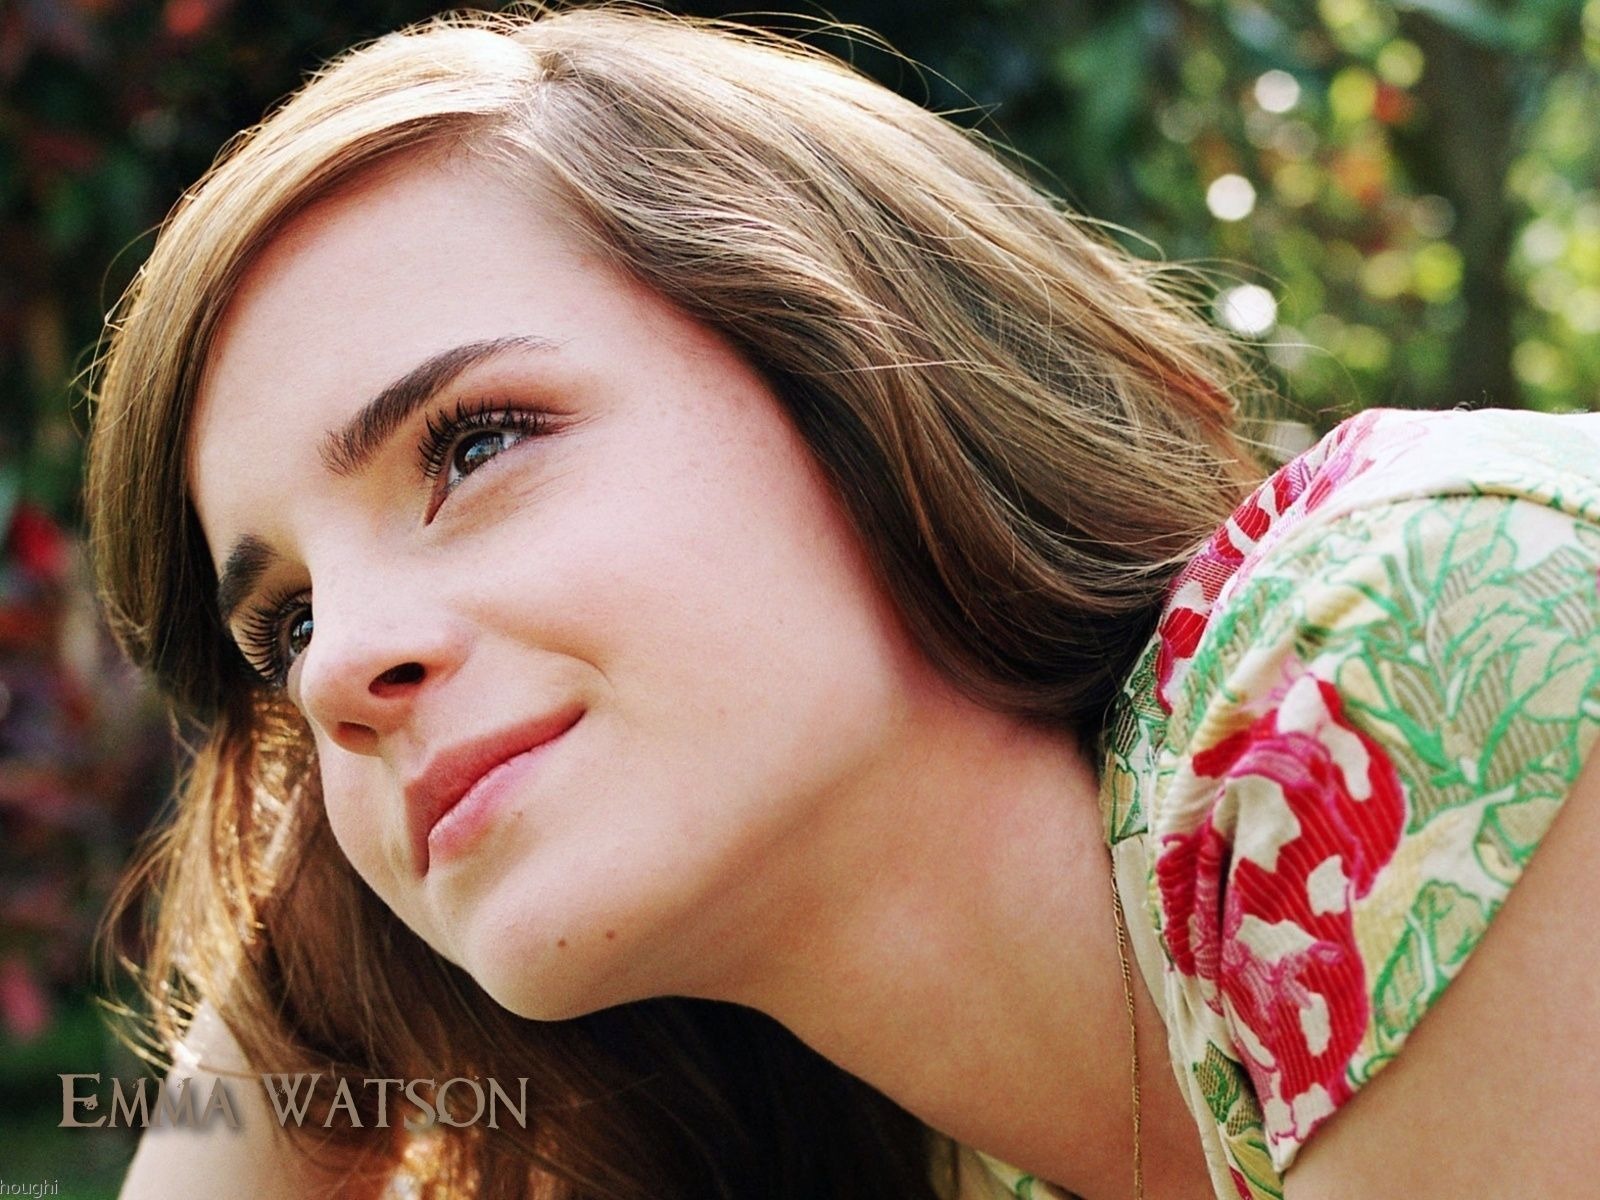 Emma Watson 艾玛·沃特森 美女壁纸26 - 1600x1200